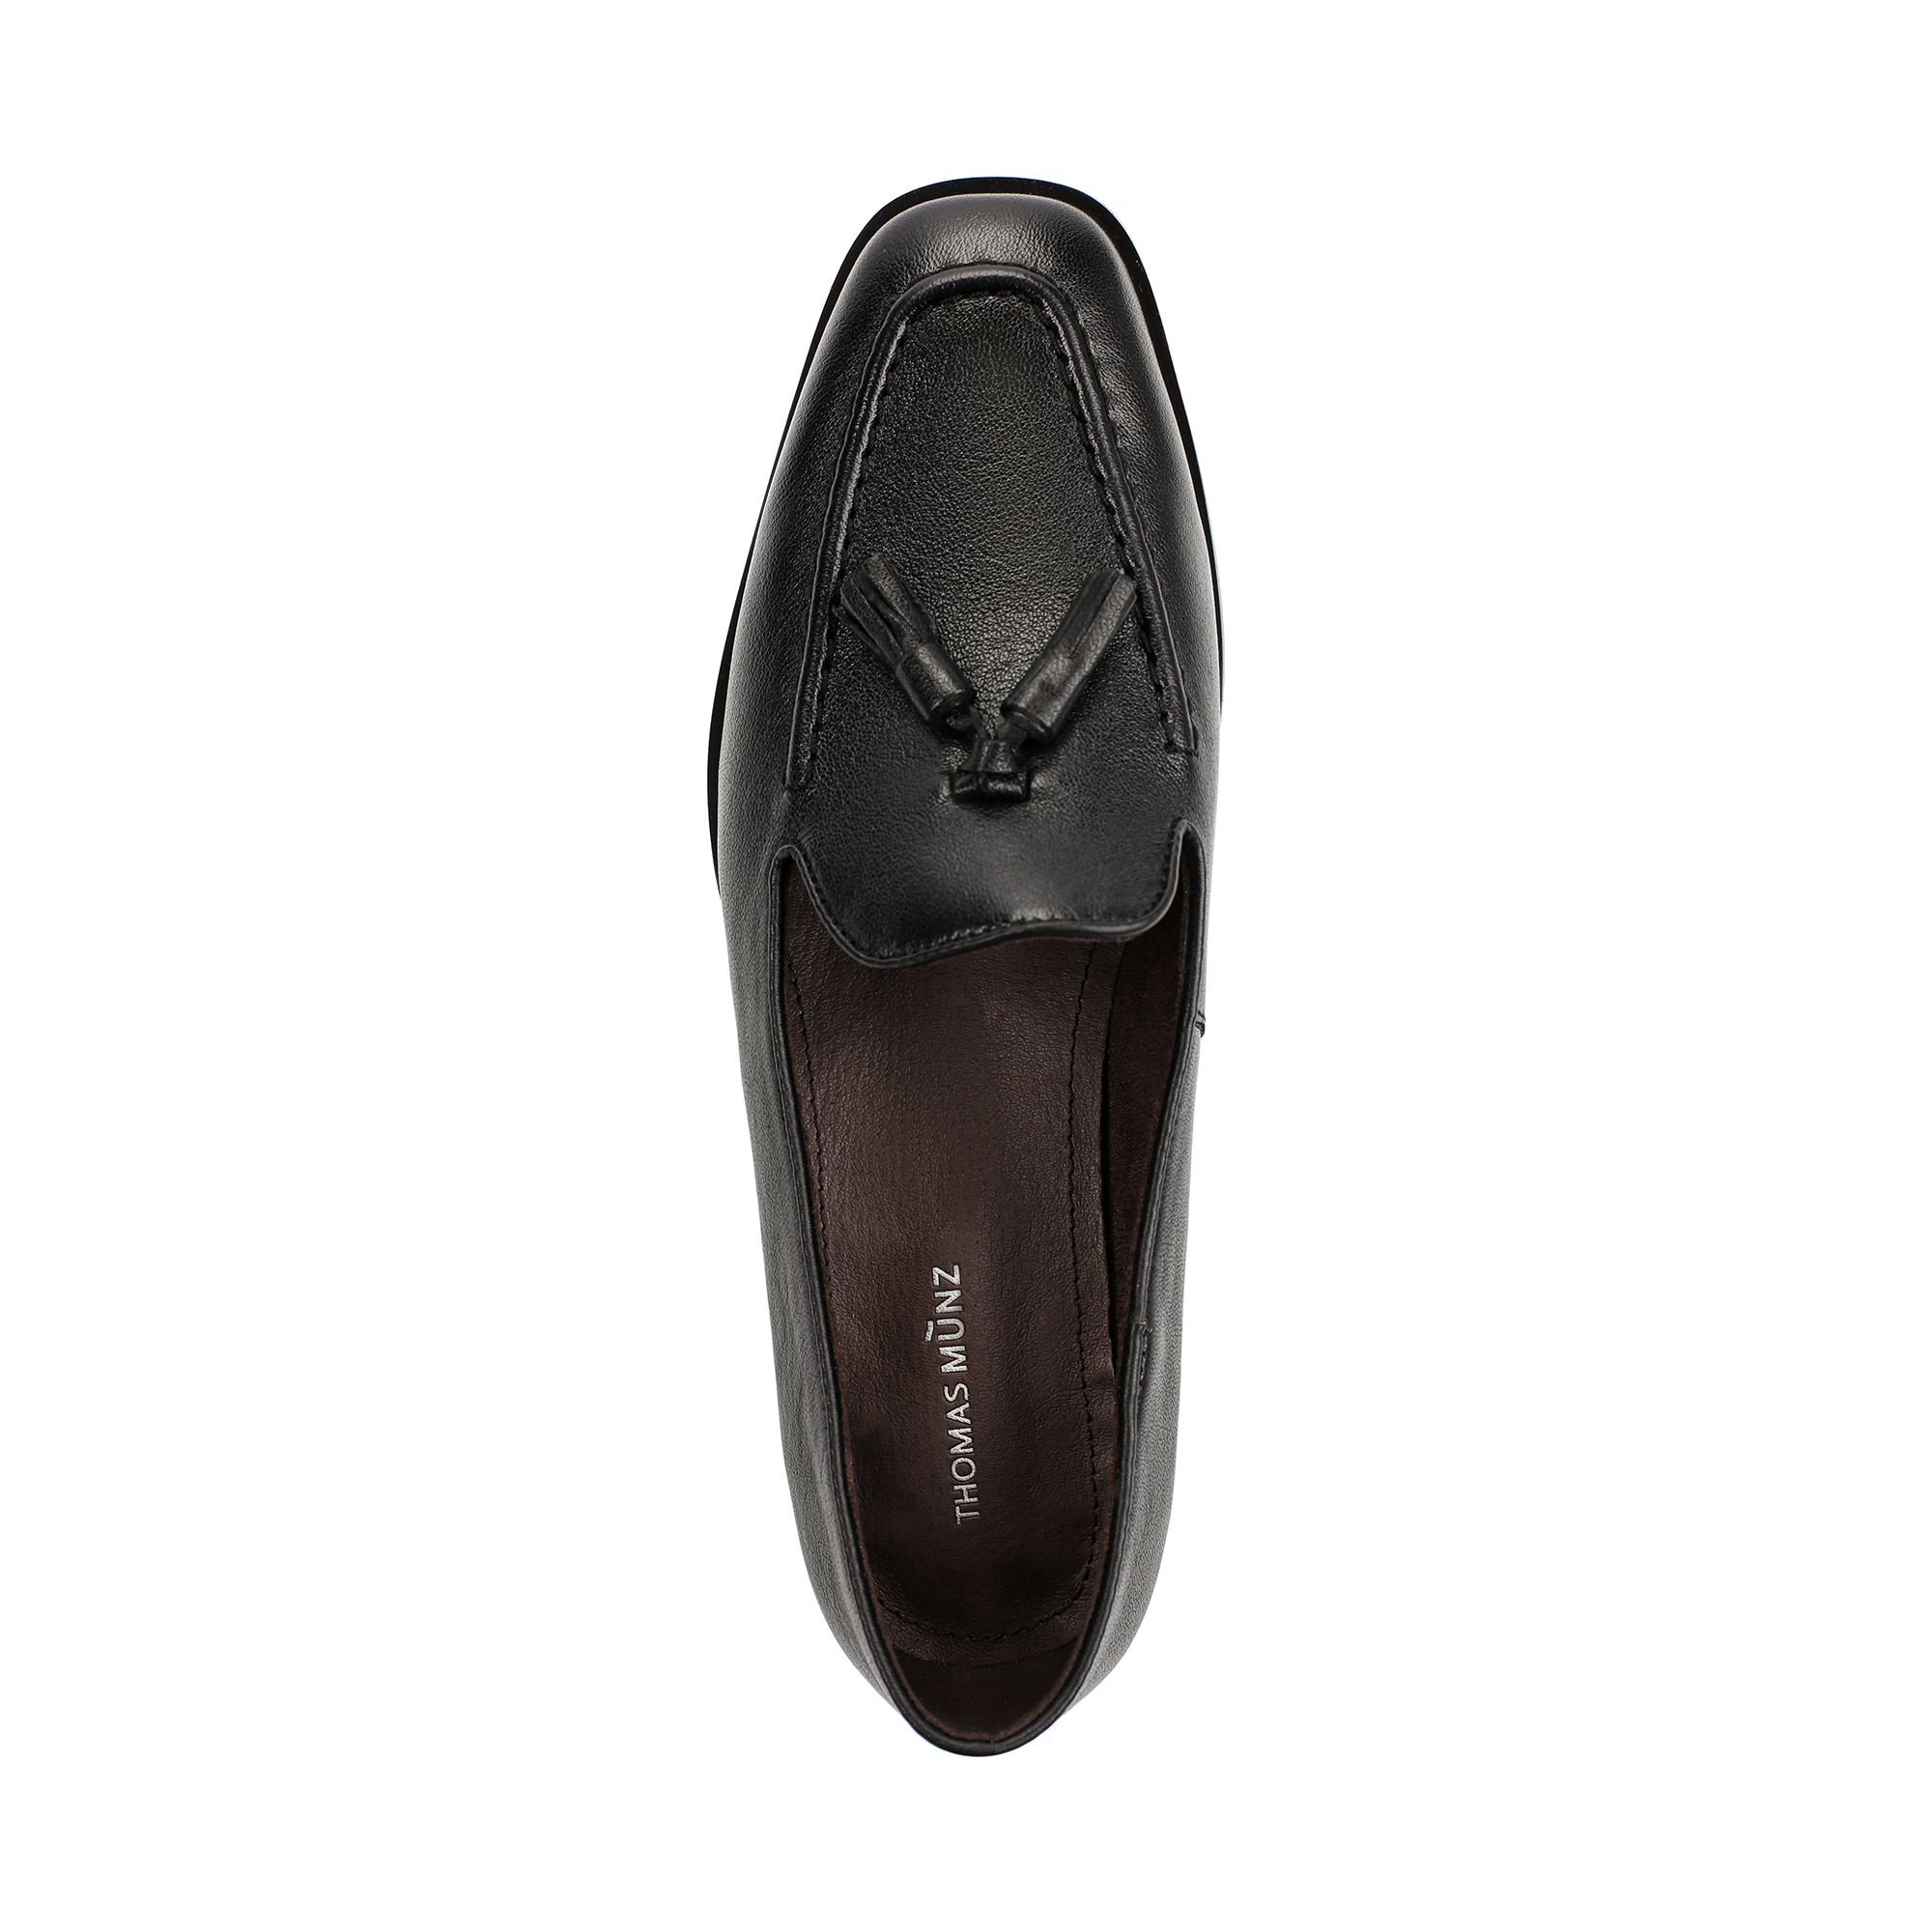 Туфли Thomas Munz 233-879A-2102, цвет черный, размер 37 - фото 4